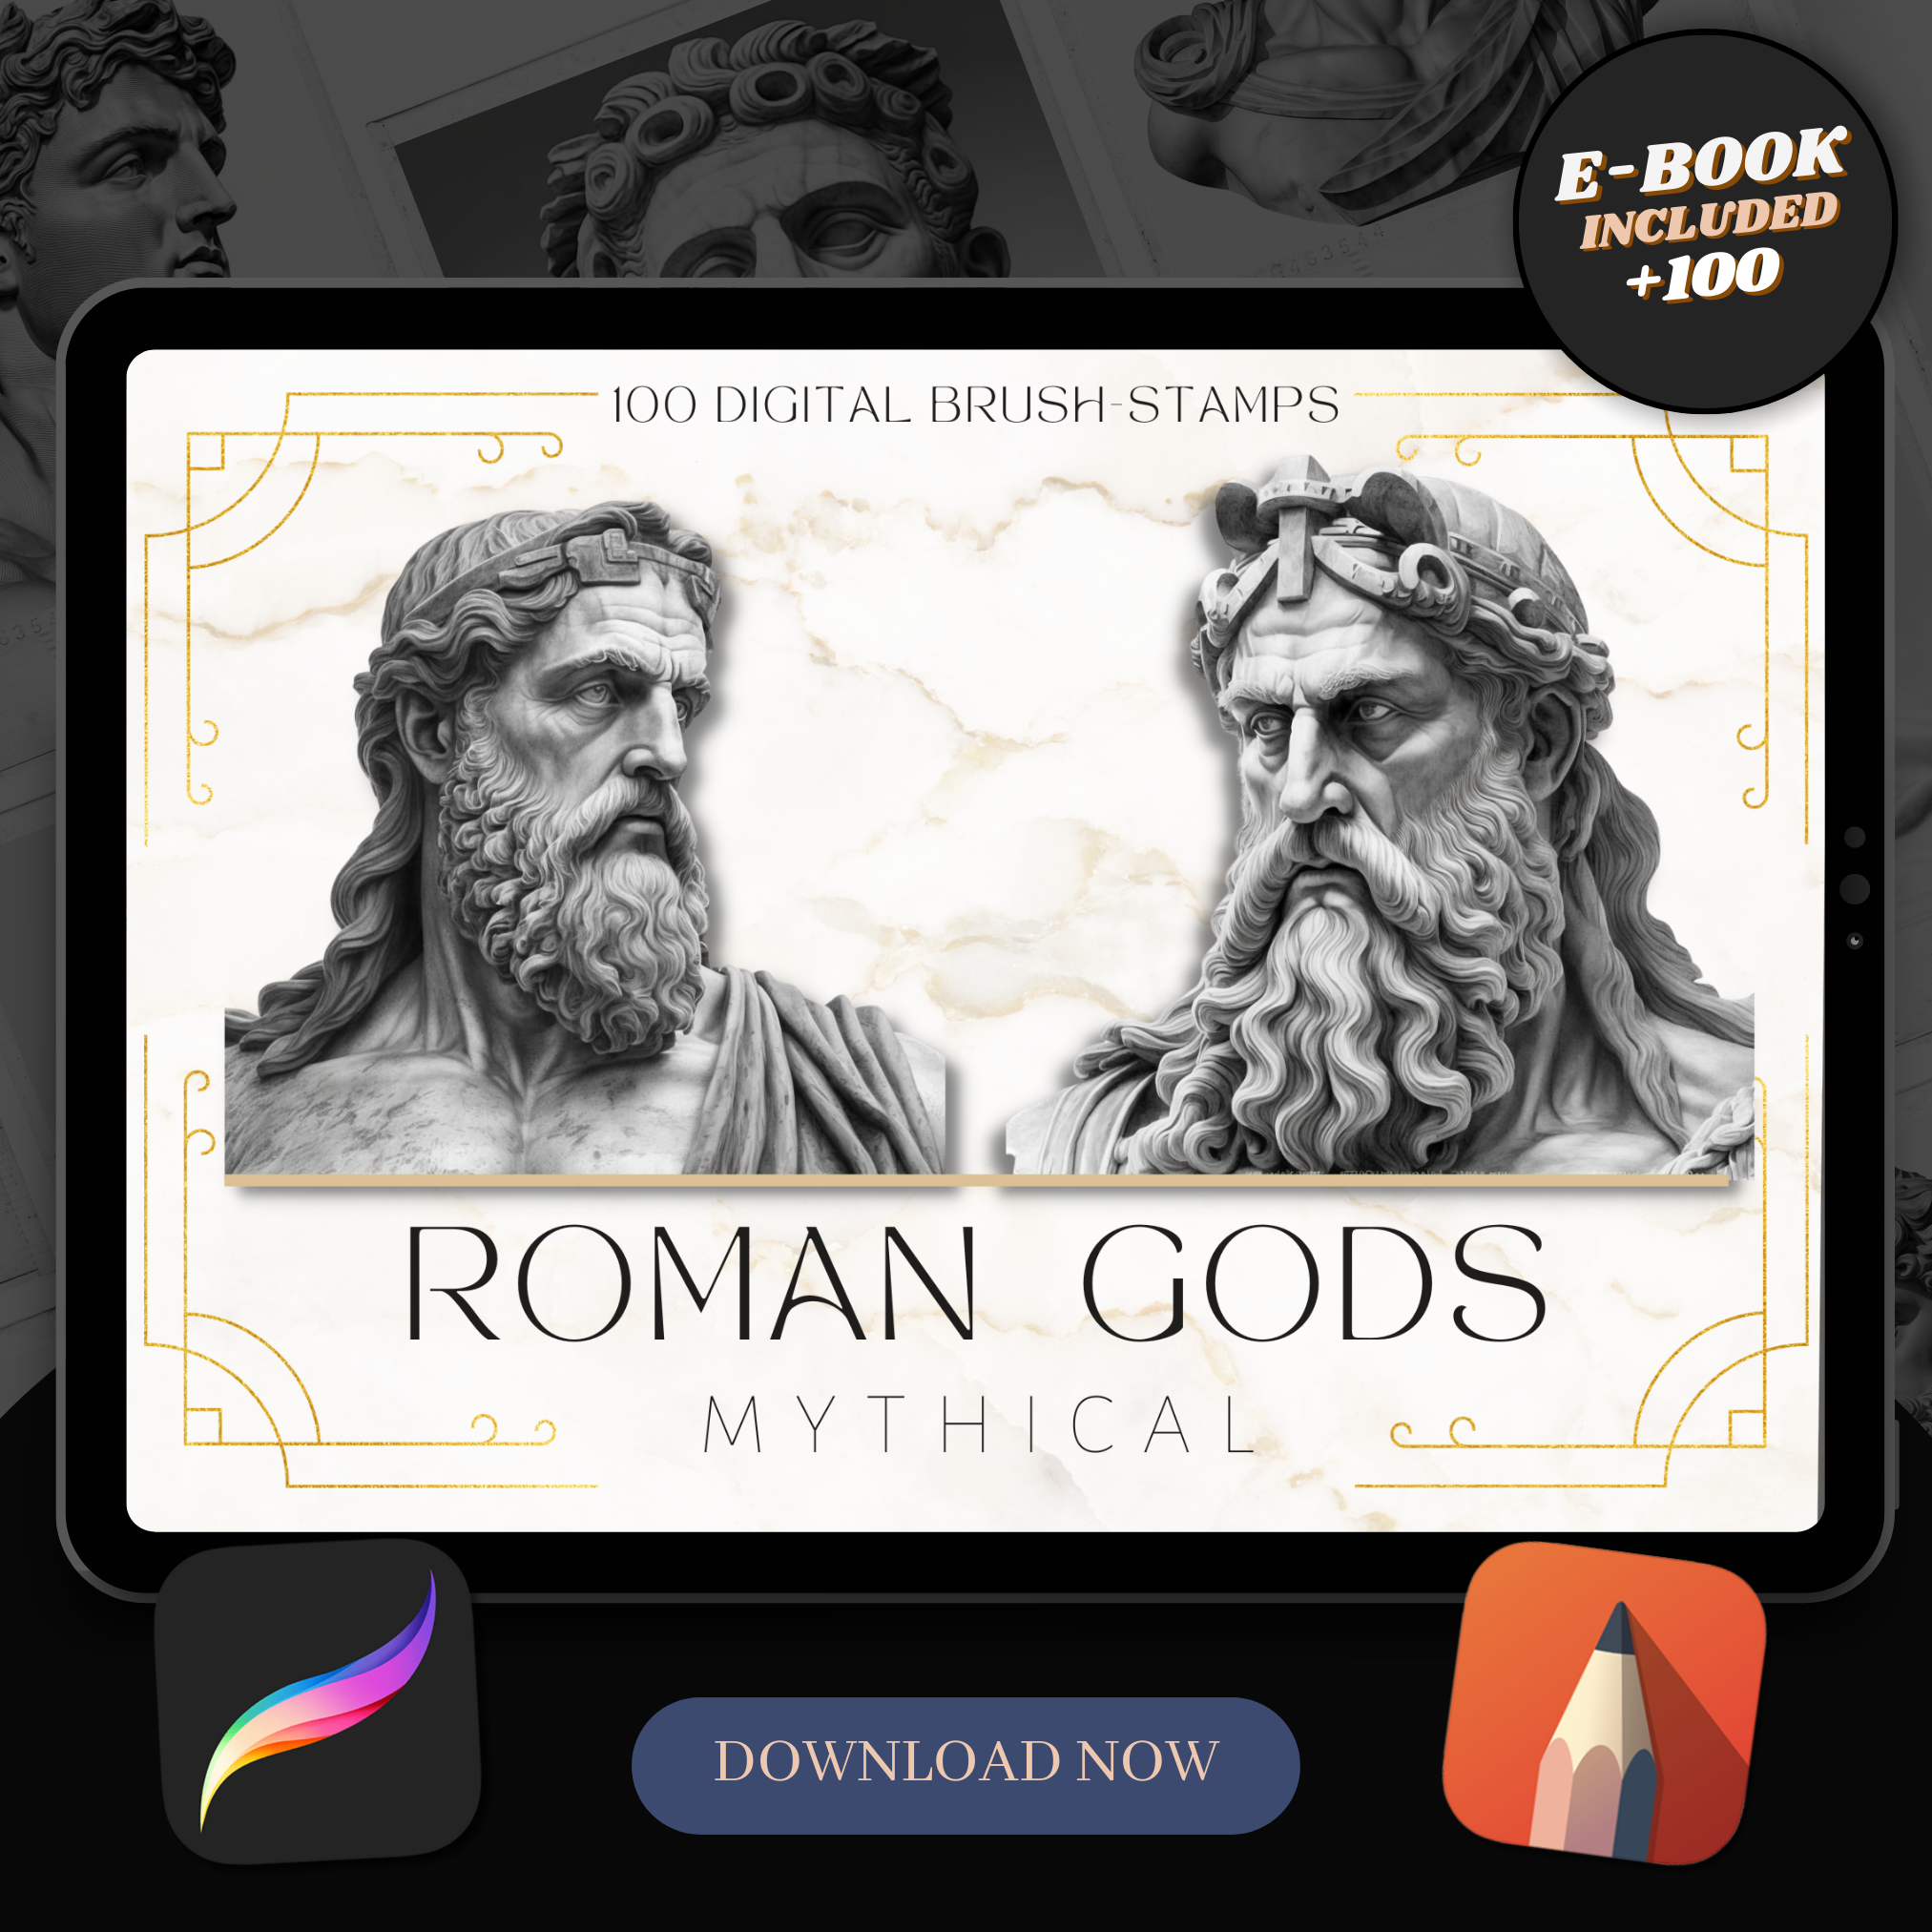 Roman Gods Digital Design Collection: 50 Procreate & Sketchbook Images